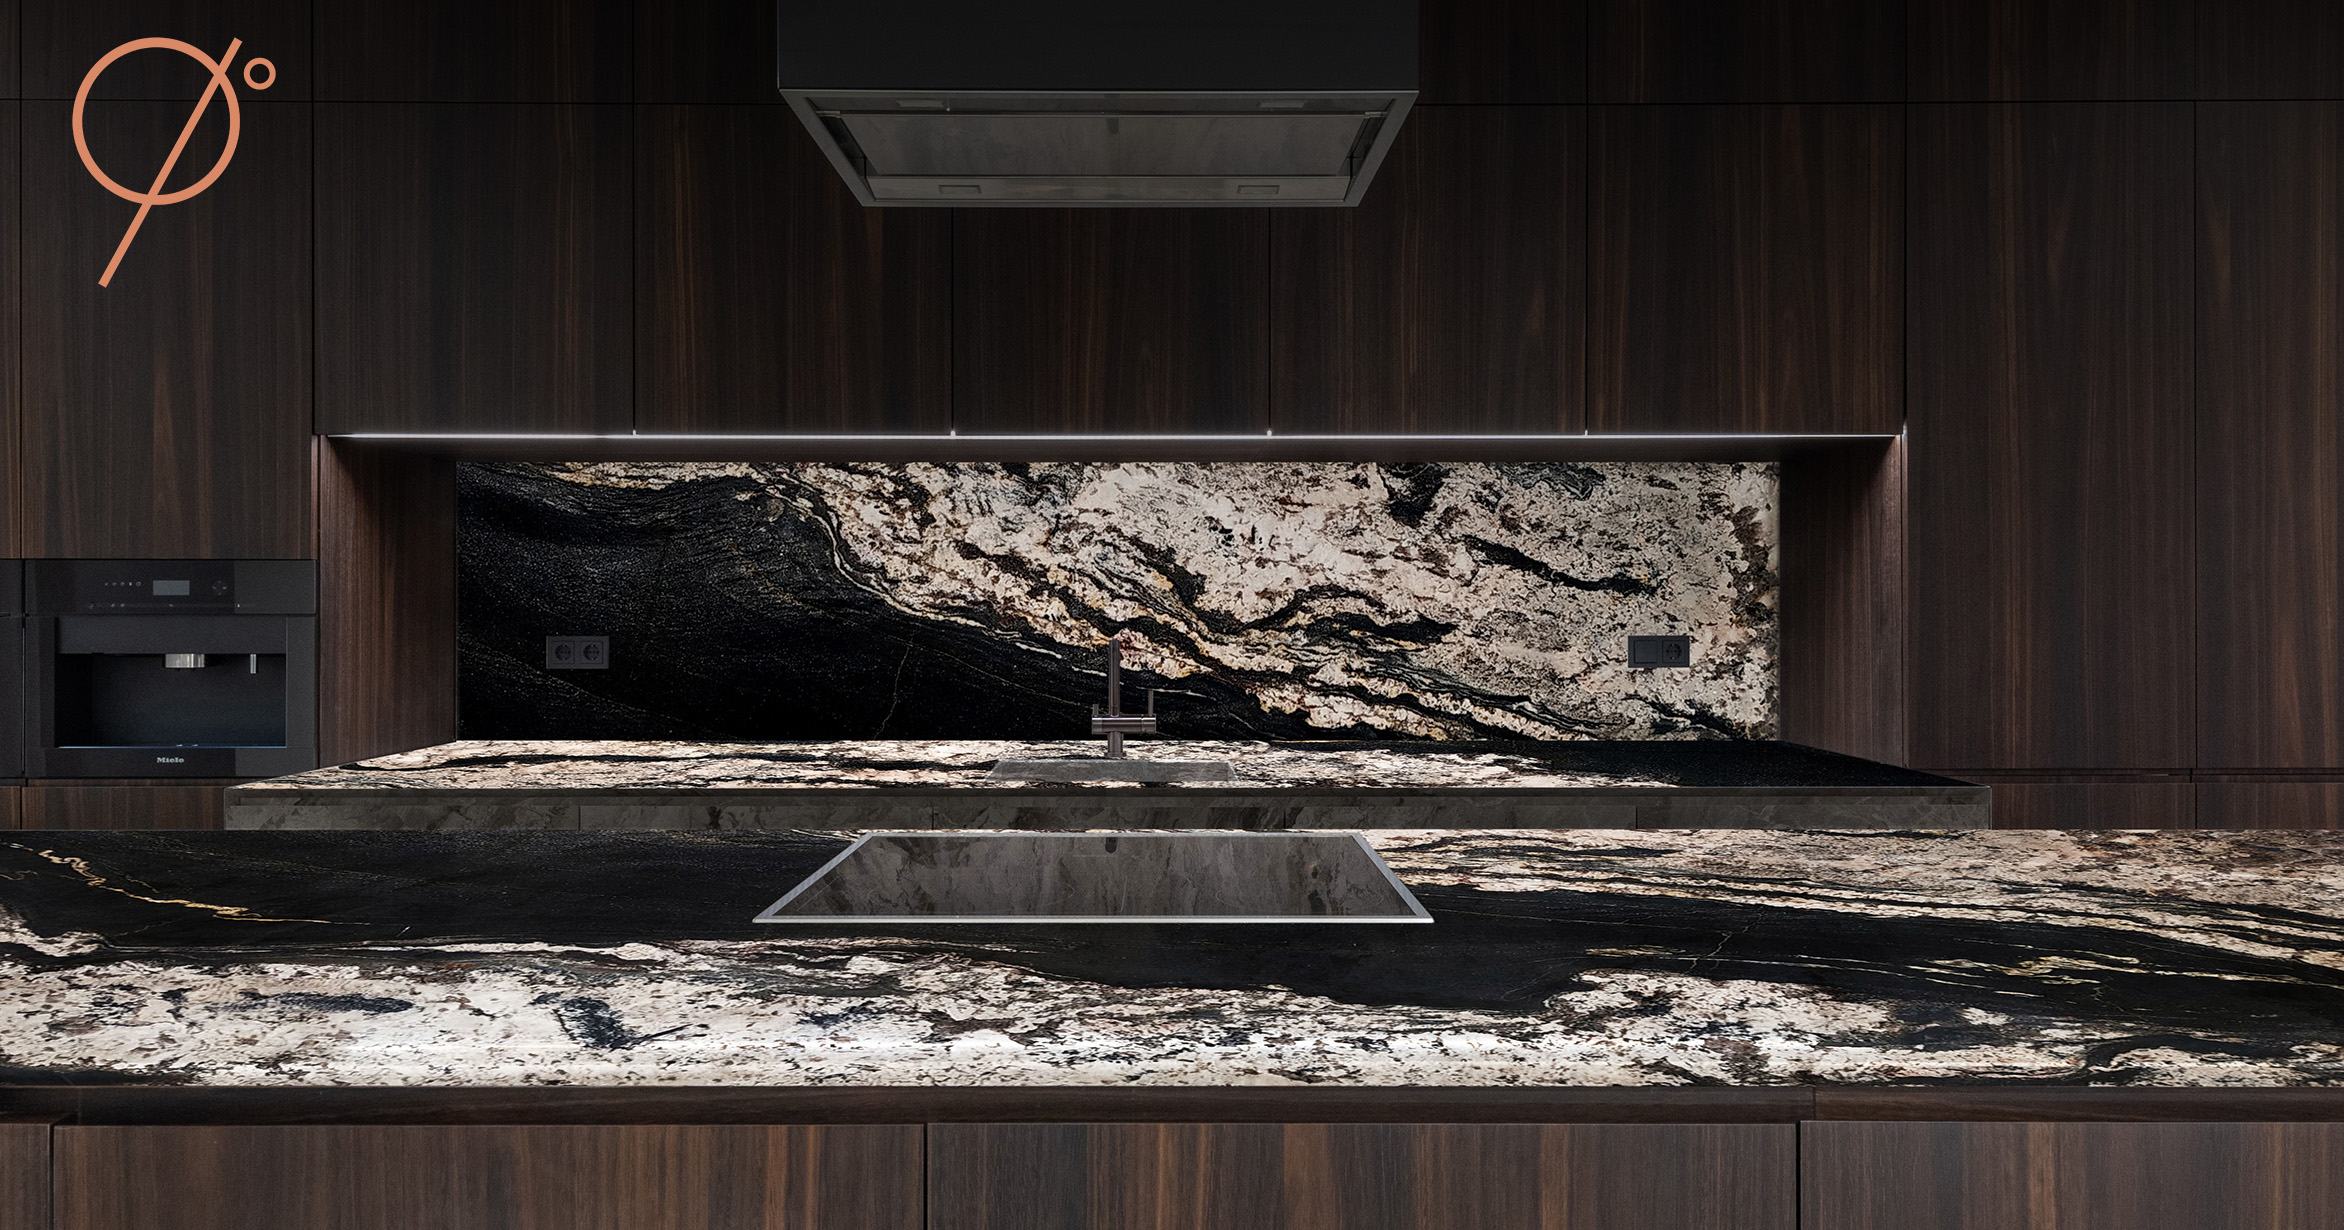 Granite countertop & granite backsplash: use granite in kitchen